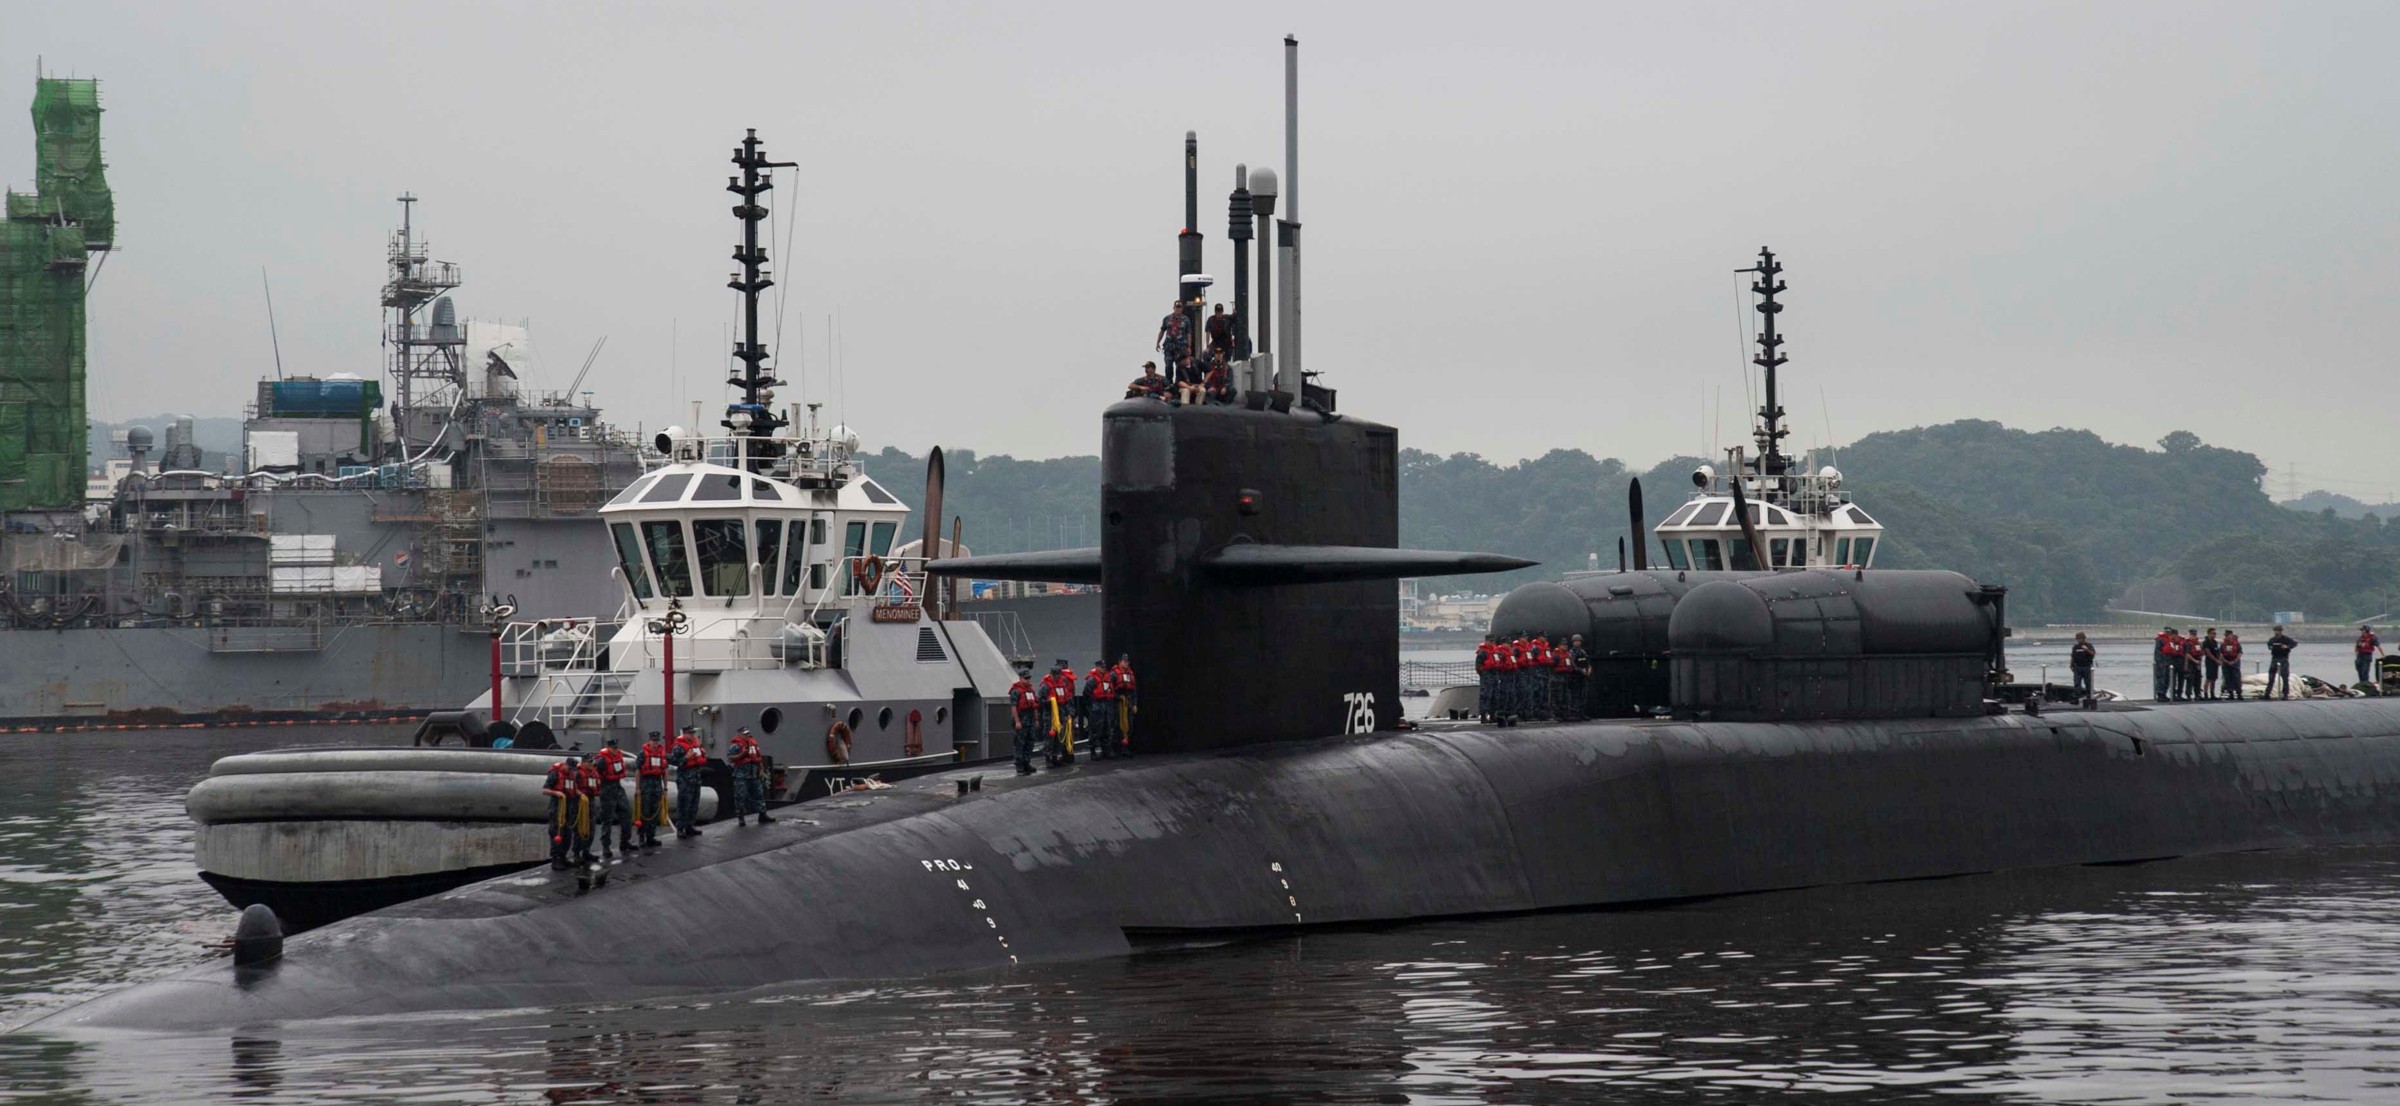 ssgn-726 uss ohio guided missile submarine us navy 2016 16 fleet activities yokosuka